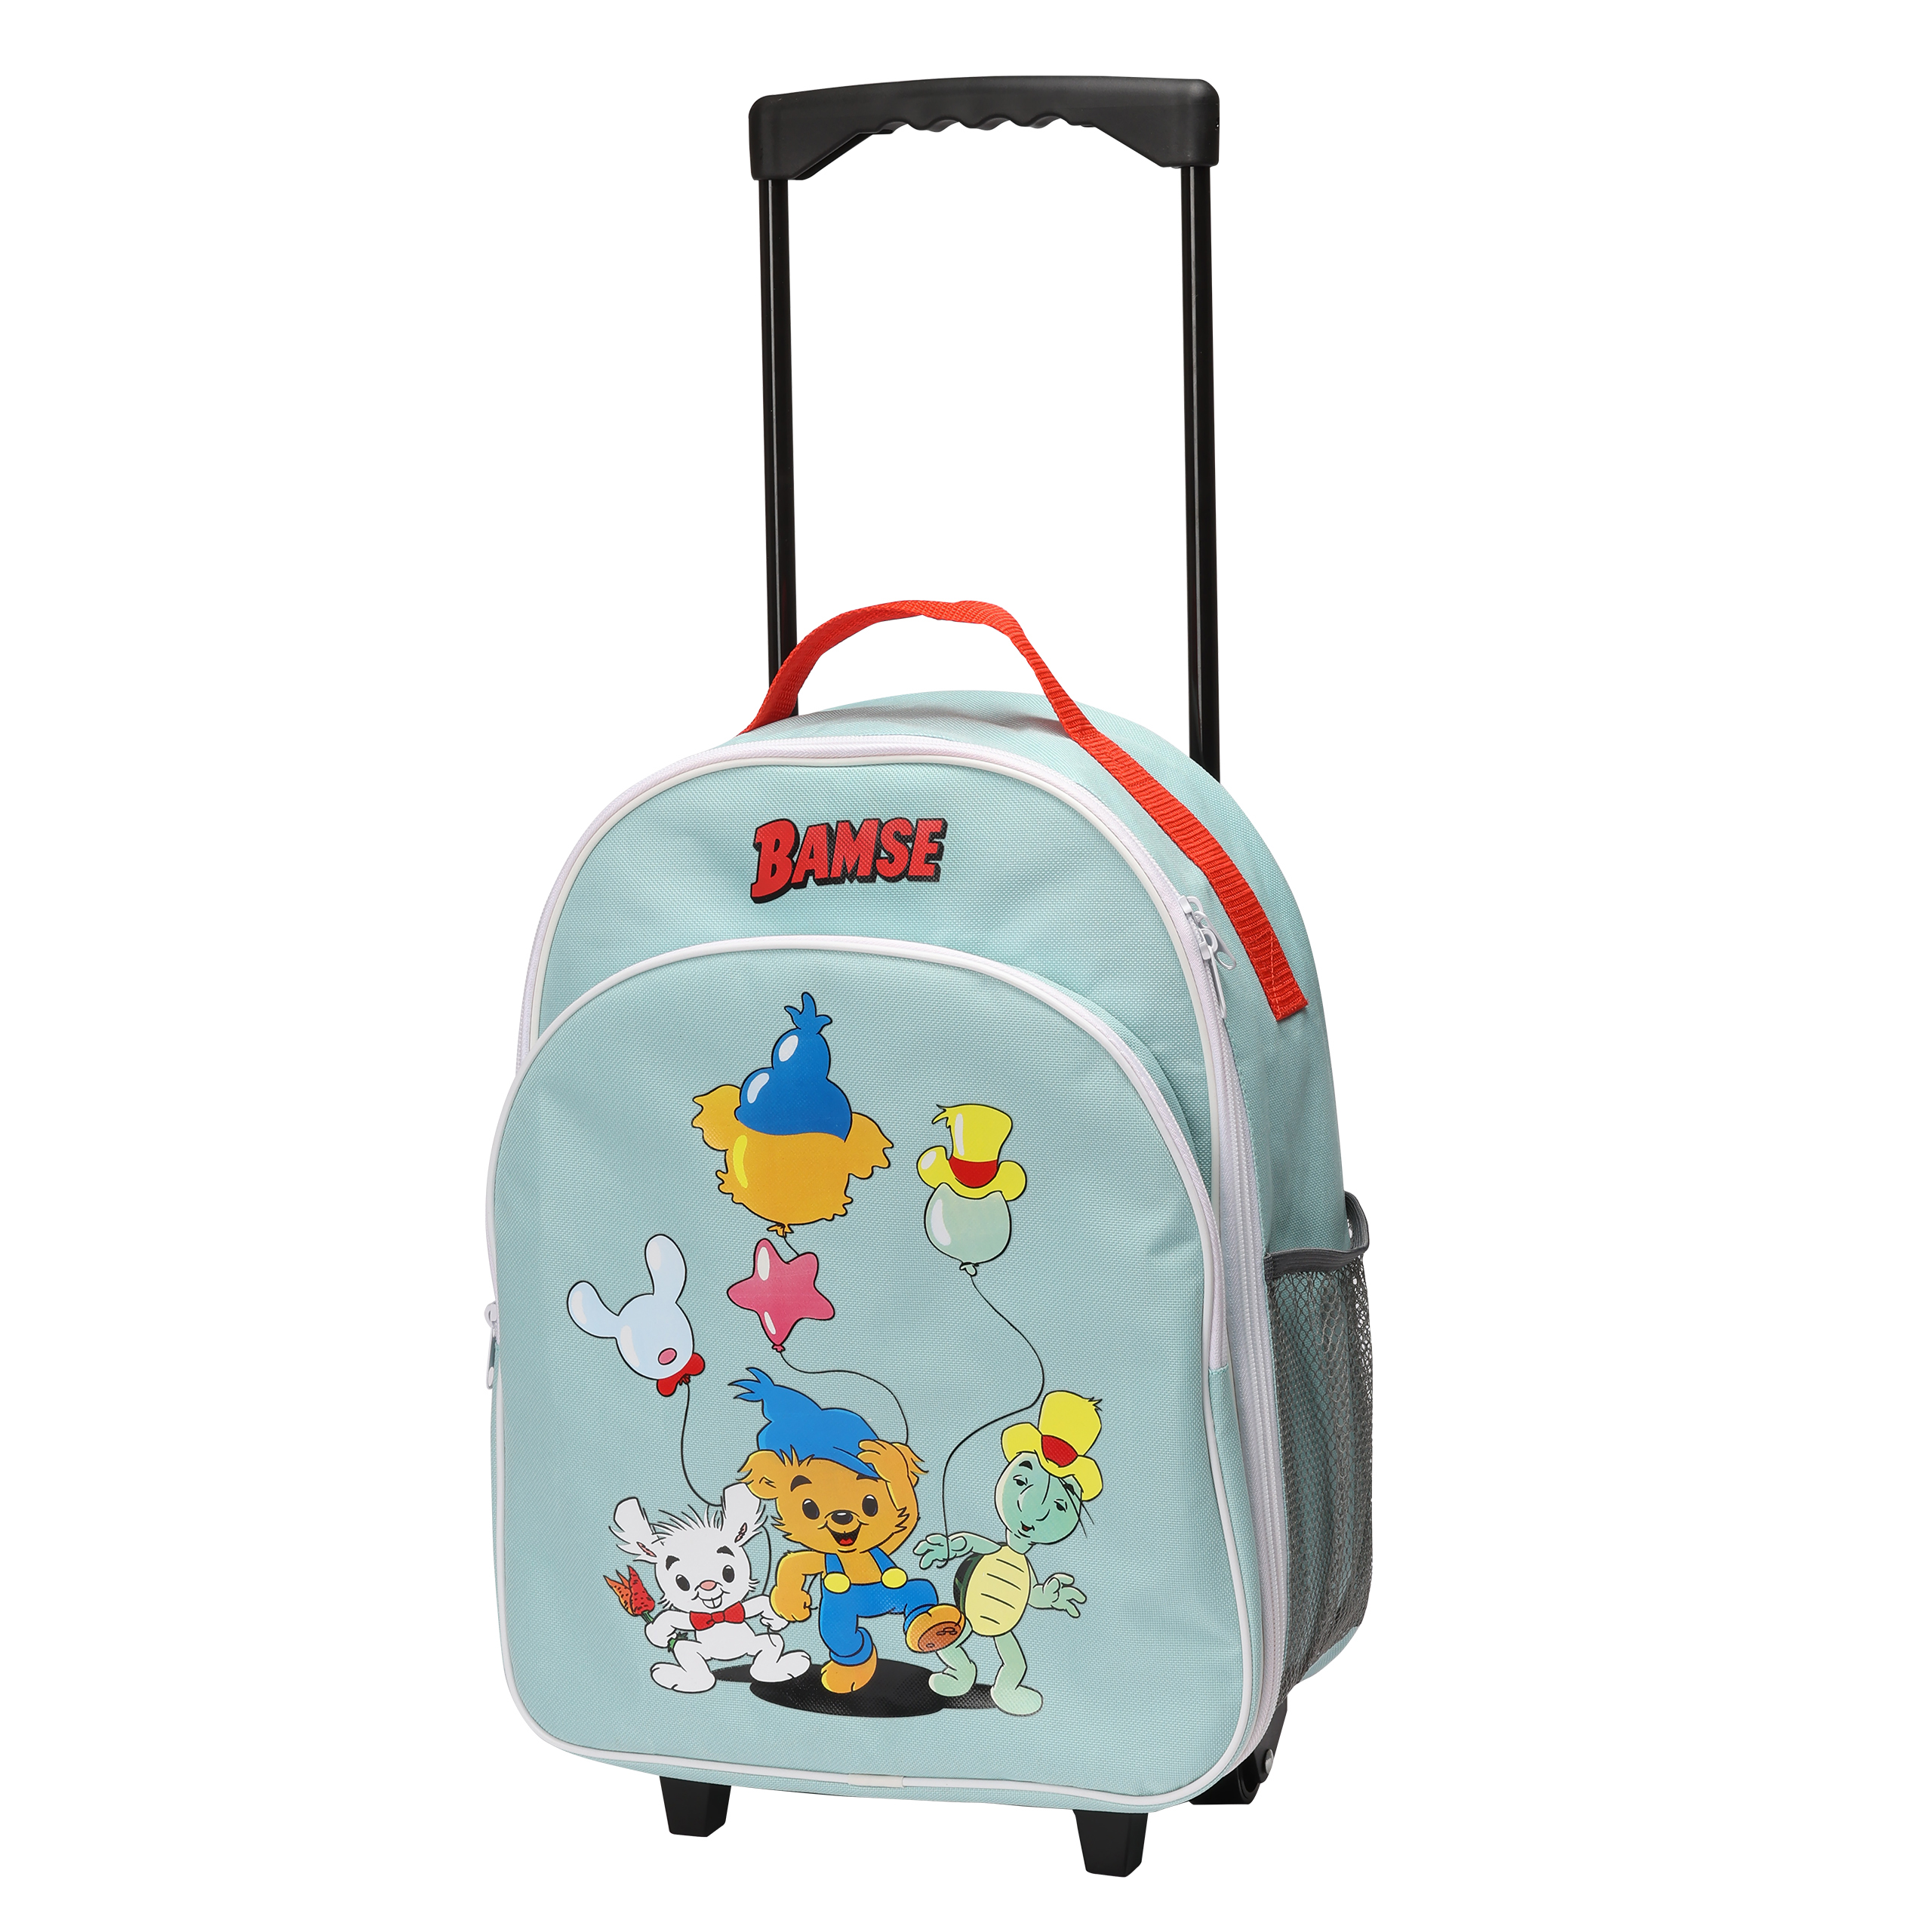 Bamse bamse barnväska resväska